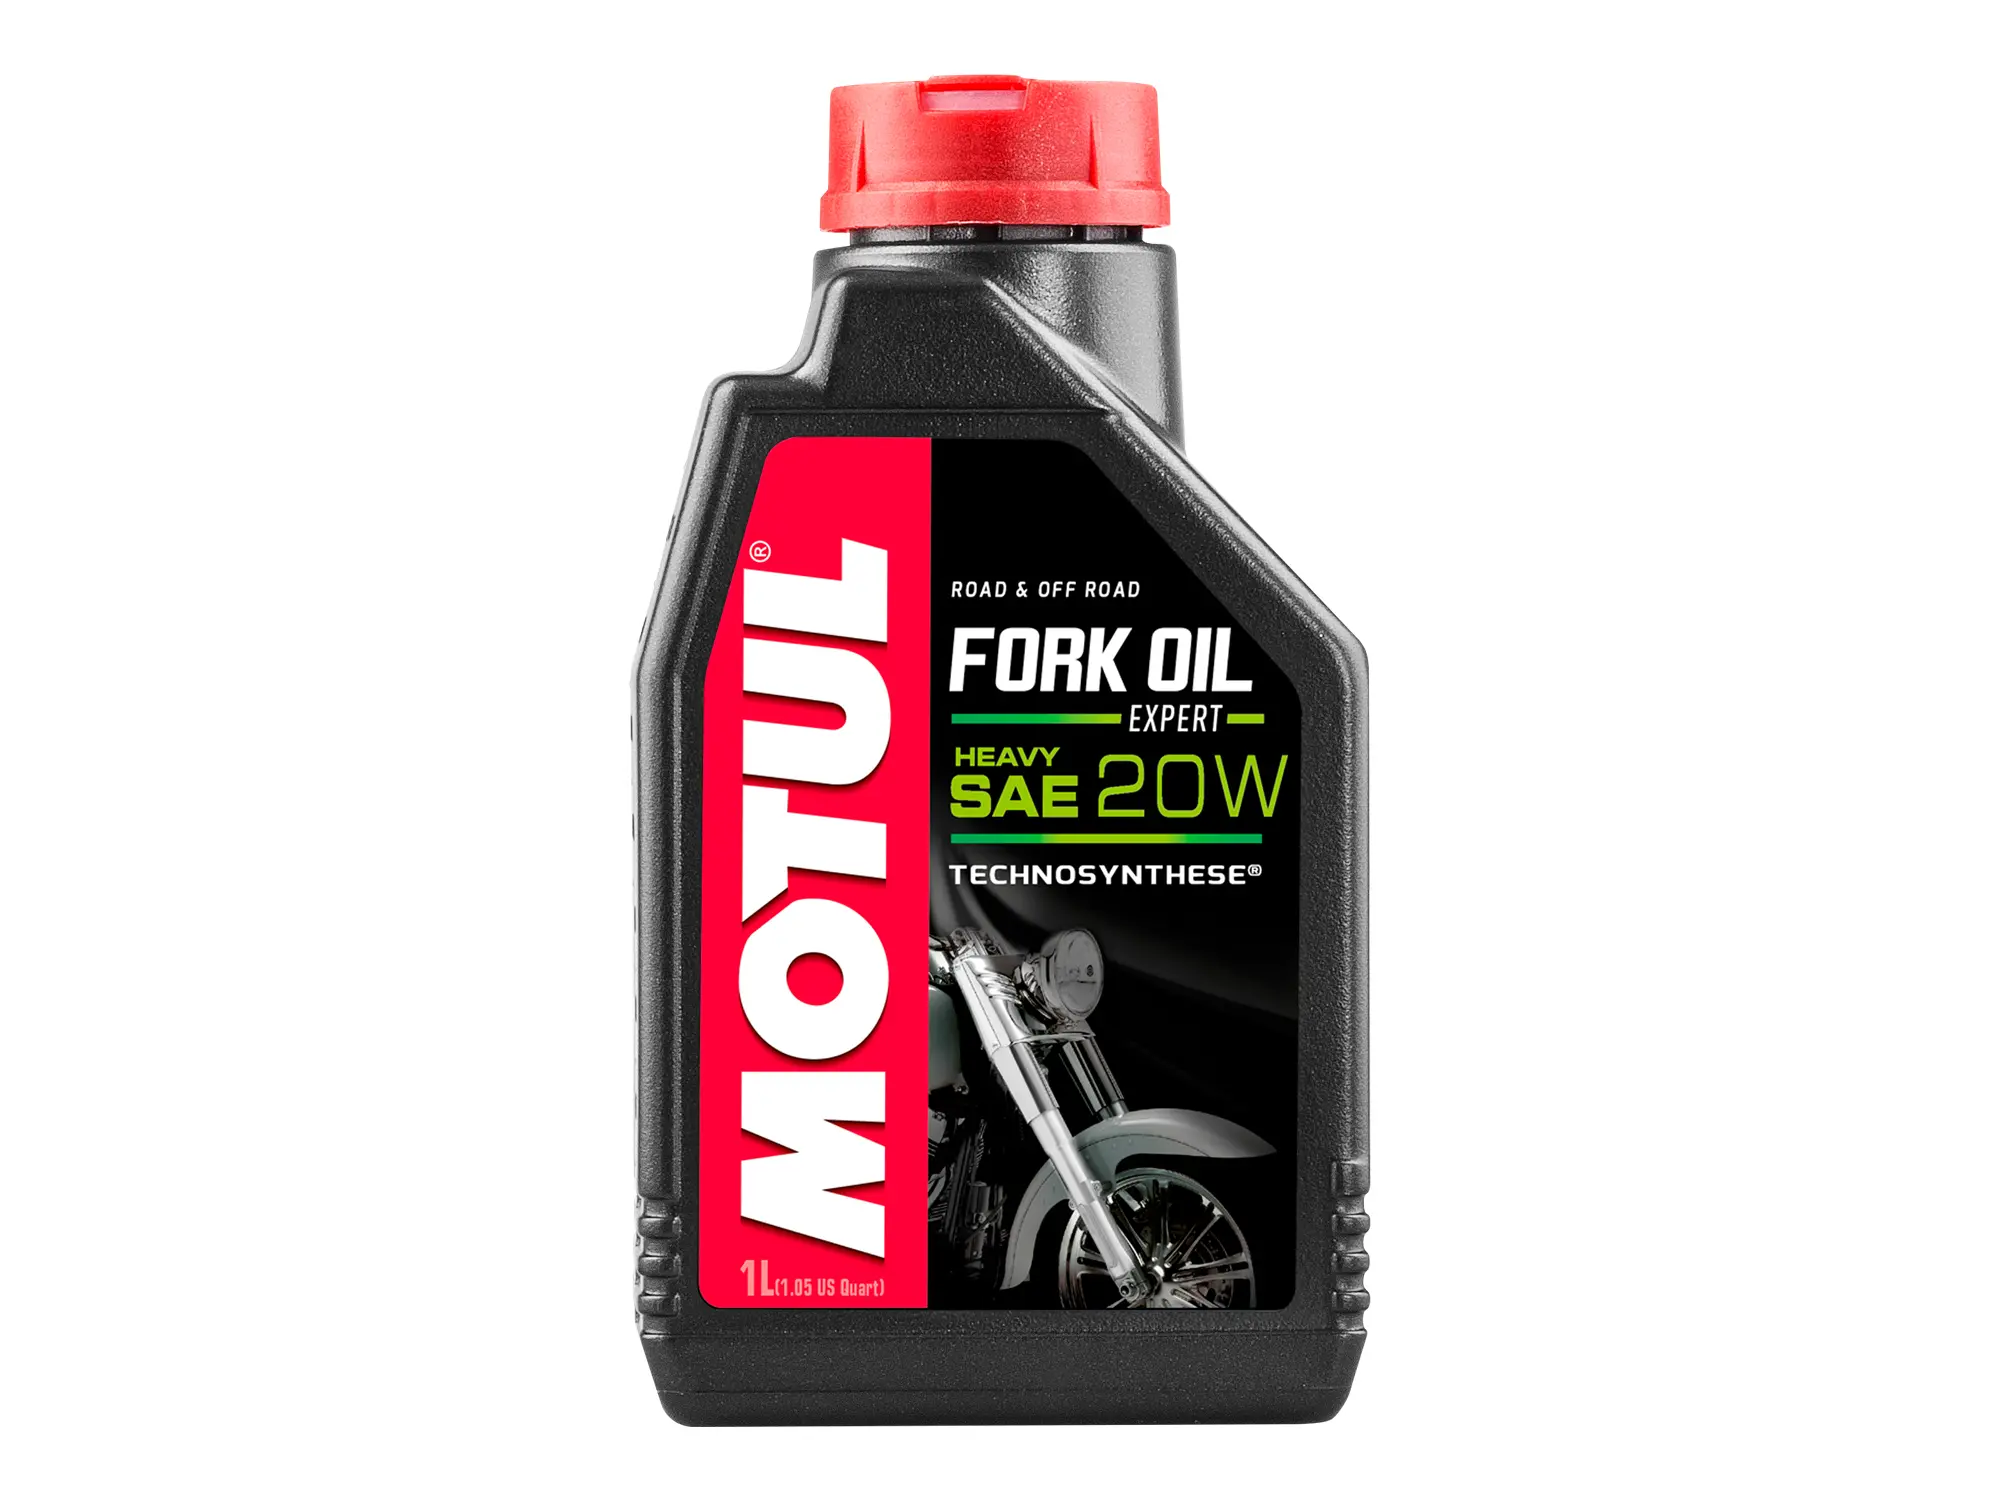 MOTUL Fork Oil Expert heavy Gabelöl 20W - 1 Liter, Art.-Nr.: 10055422 - Bild 1